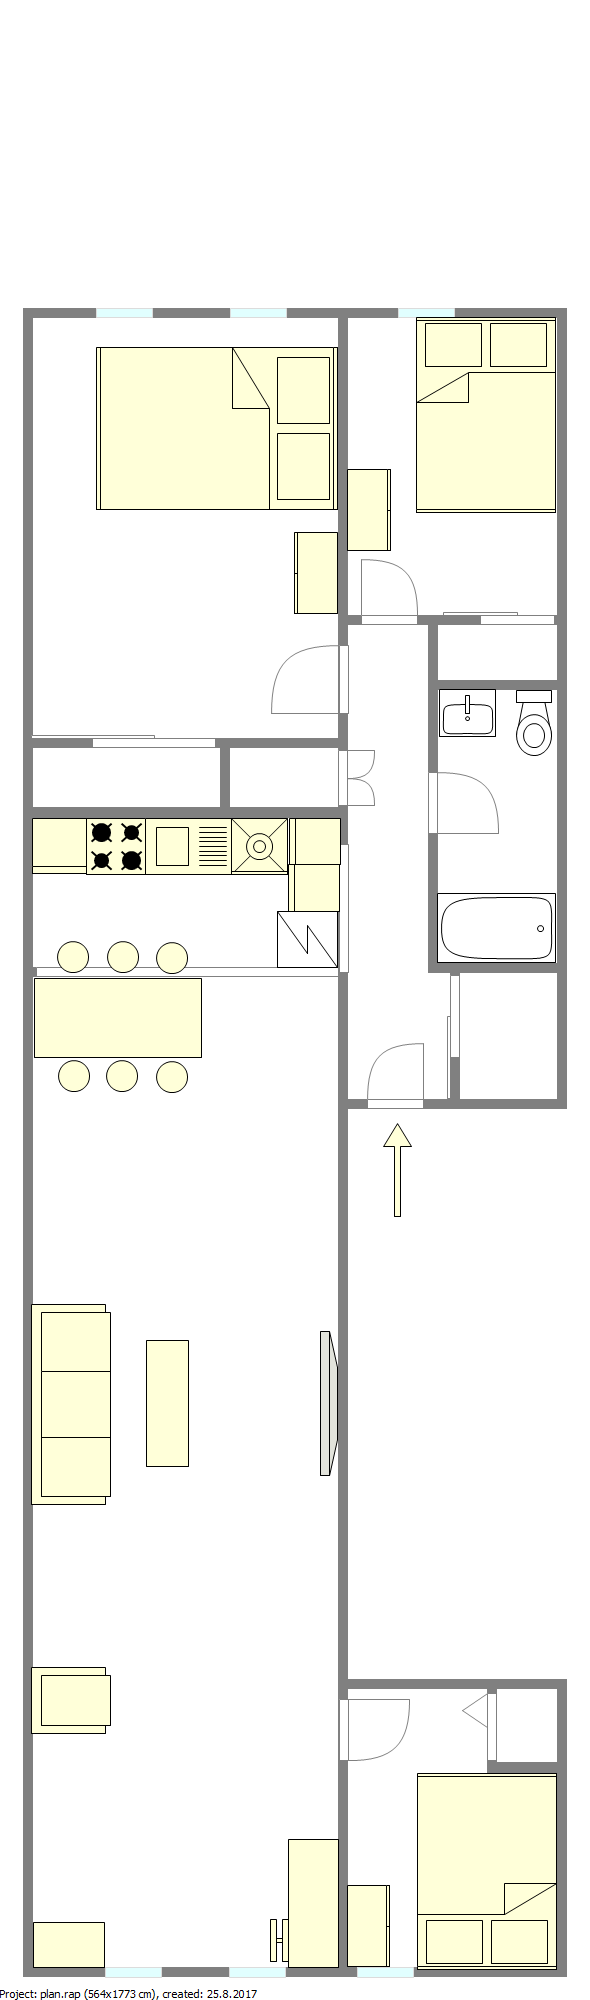 Appartement Astoria - Plan interactif